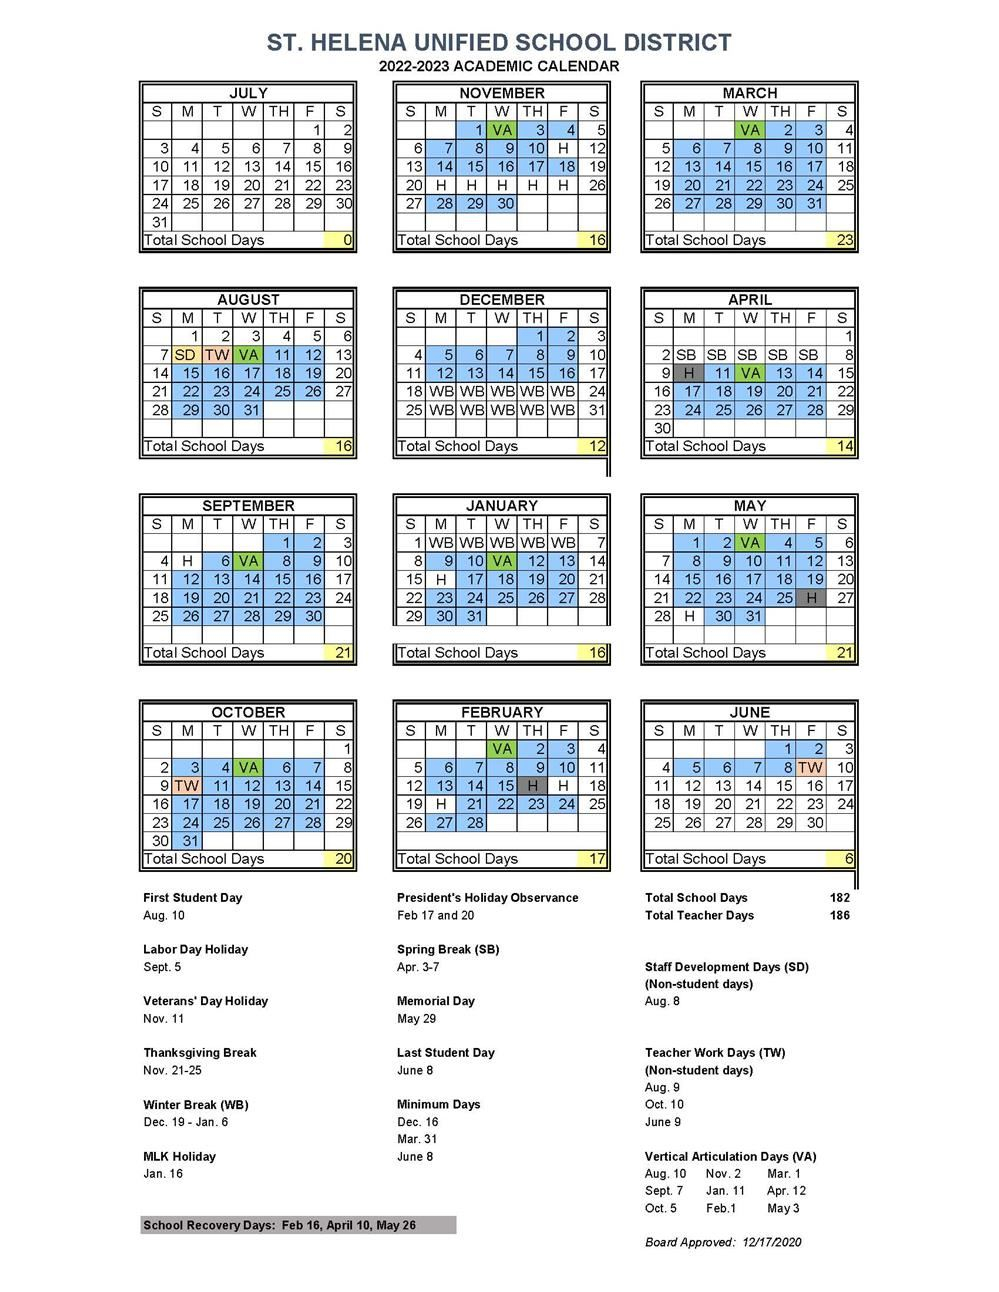 pcc-academic-calendar-2023-customize-and-print